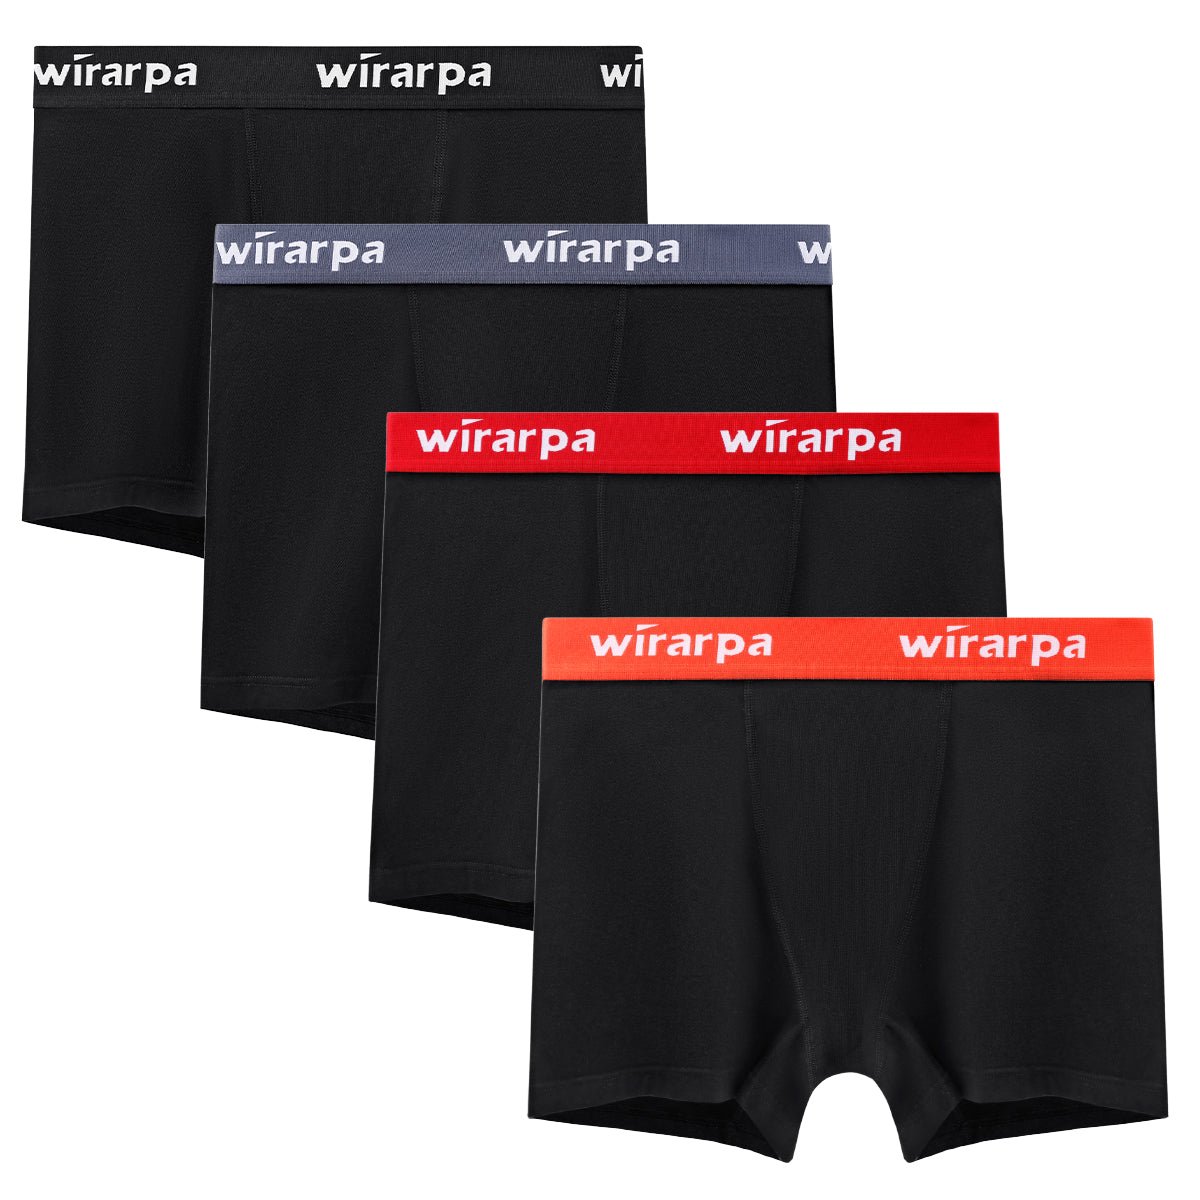 wirarpa Women's Cotton Boxer Briefs Underwear Anti Chafe Boy